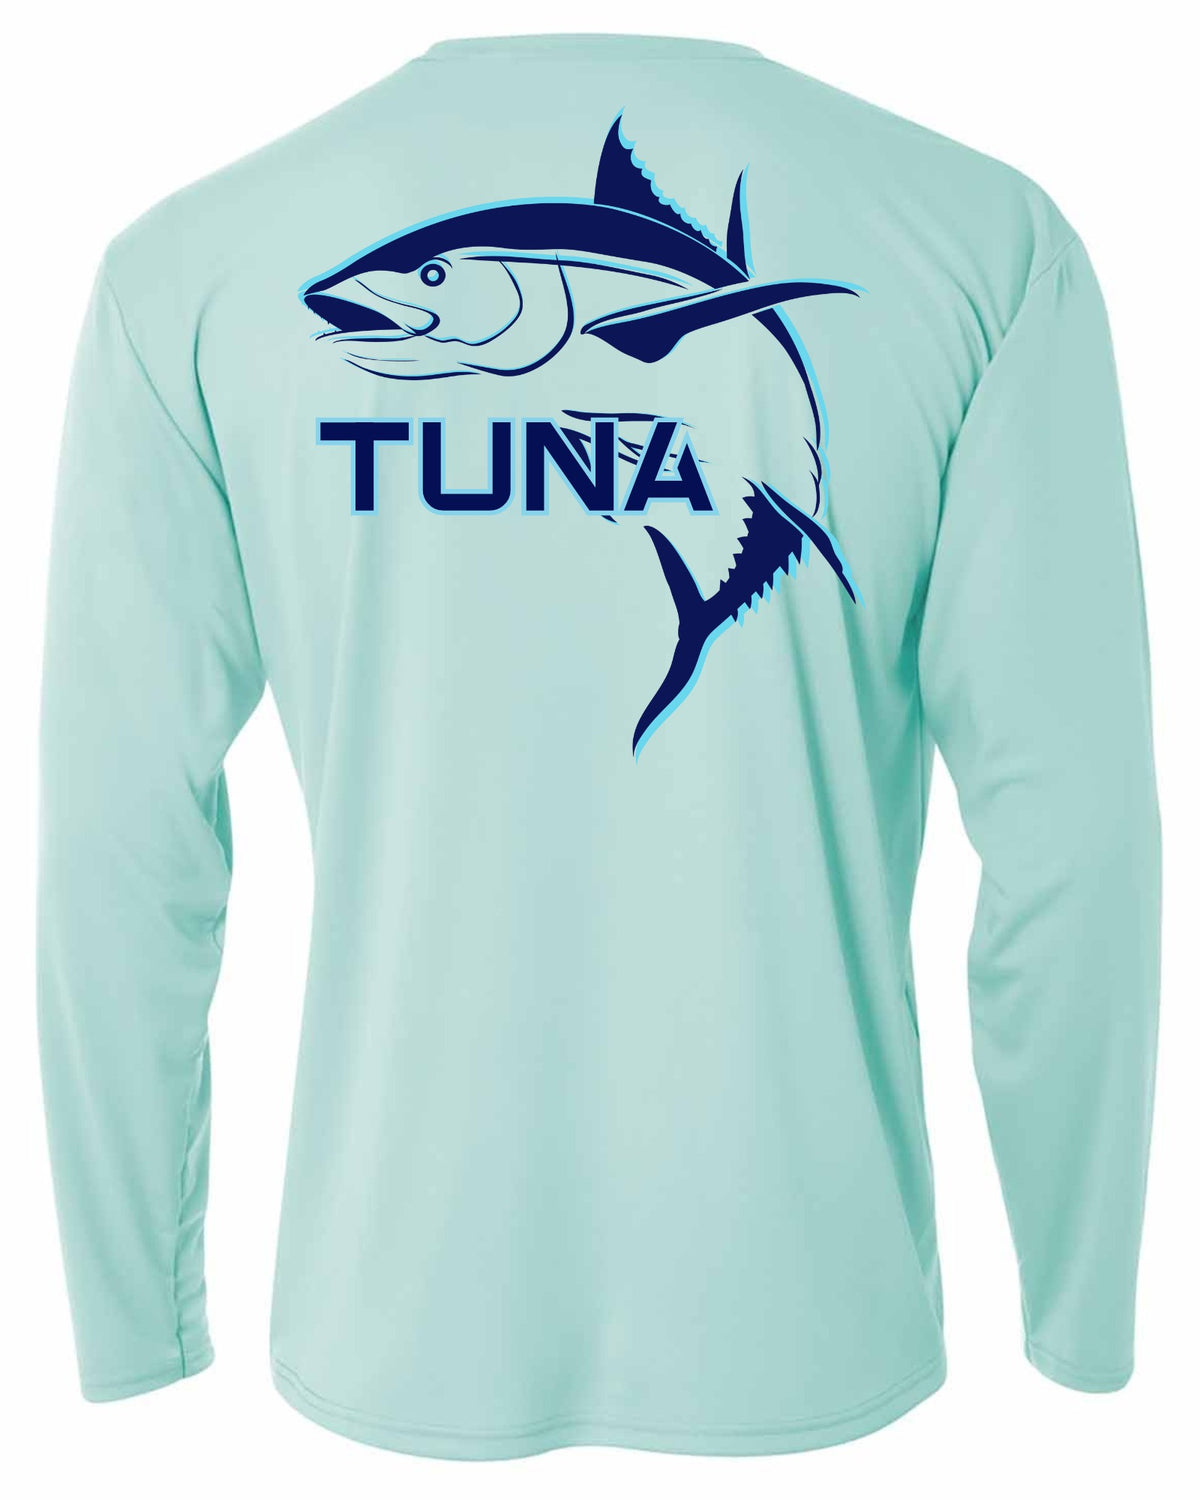 MadBull Big Tuna Performance Fishing Shirt